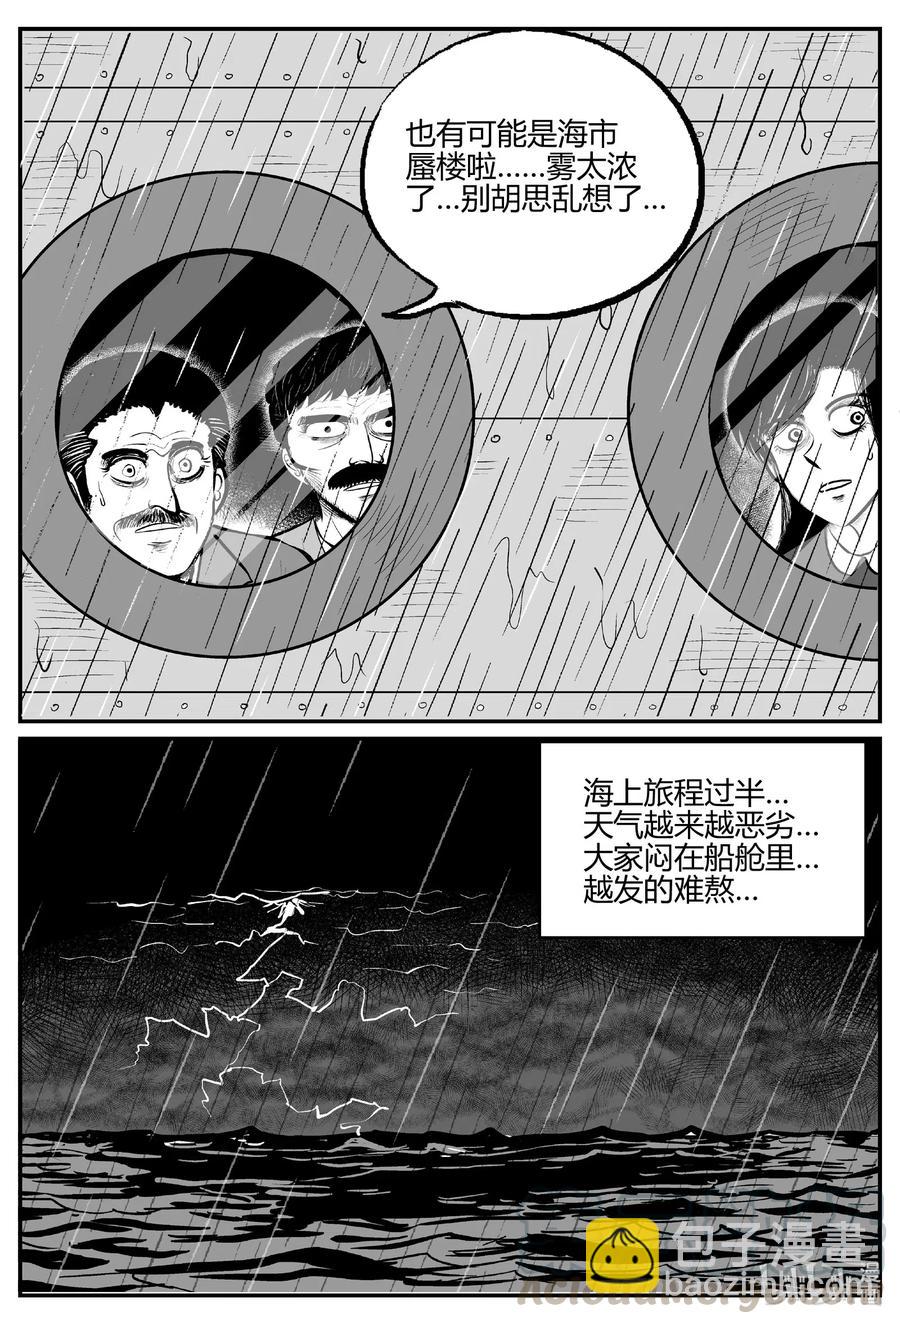 小智怪談 - 519 幽靈船 - 1